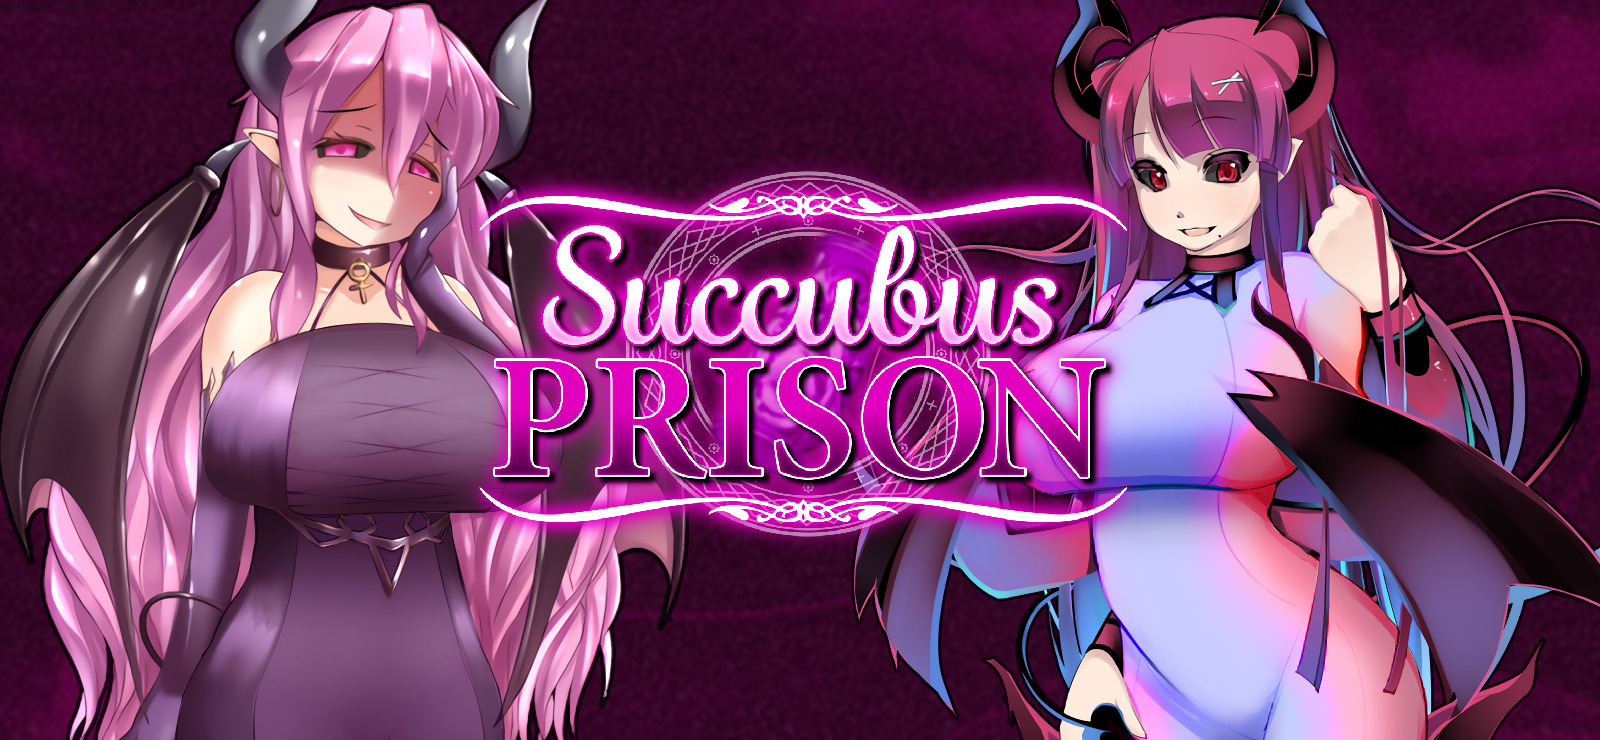 Succubus prision